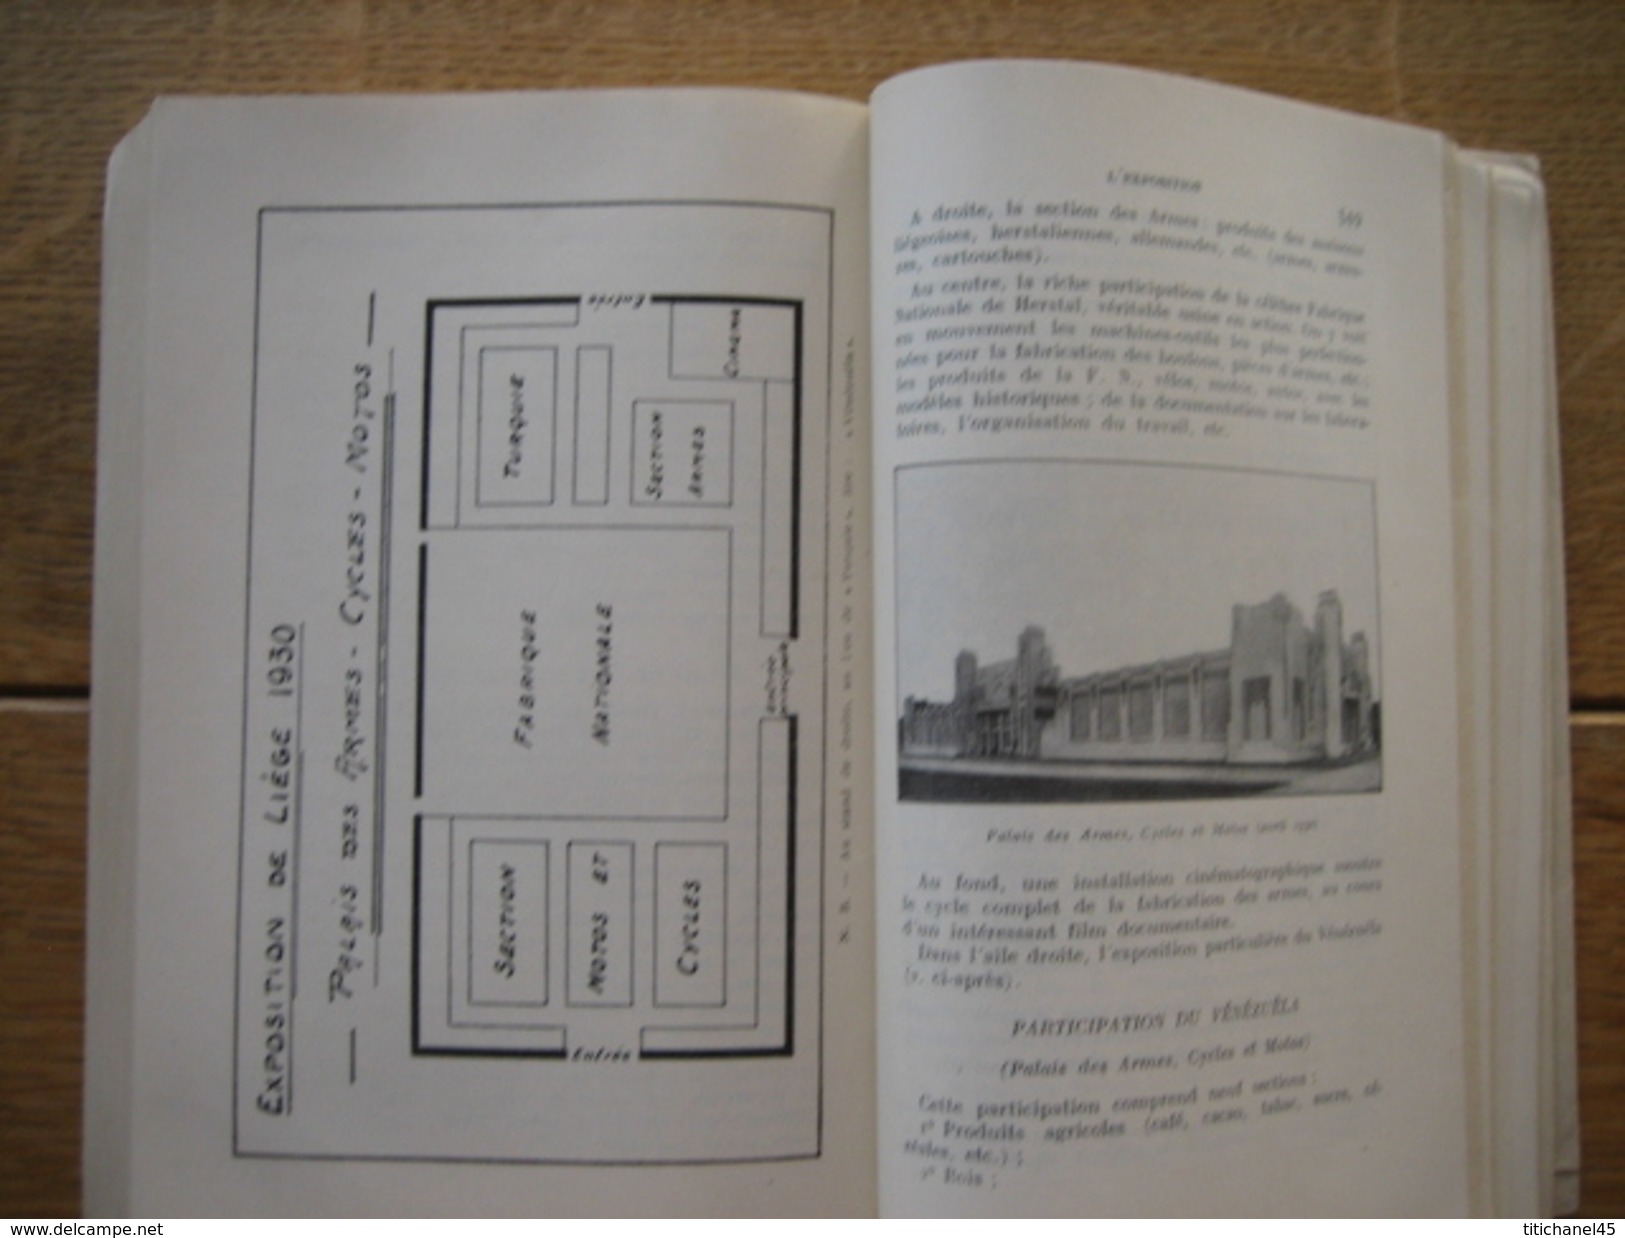 LIEGE 1930 - L'EXPOSITION INTERNATIONALE - LA VILLE - LA REGION + PLAN DE L'EXPOSITION - PLAN DE LA VILLE - 636 pages